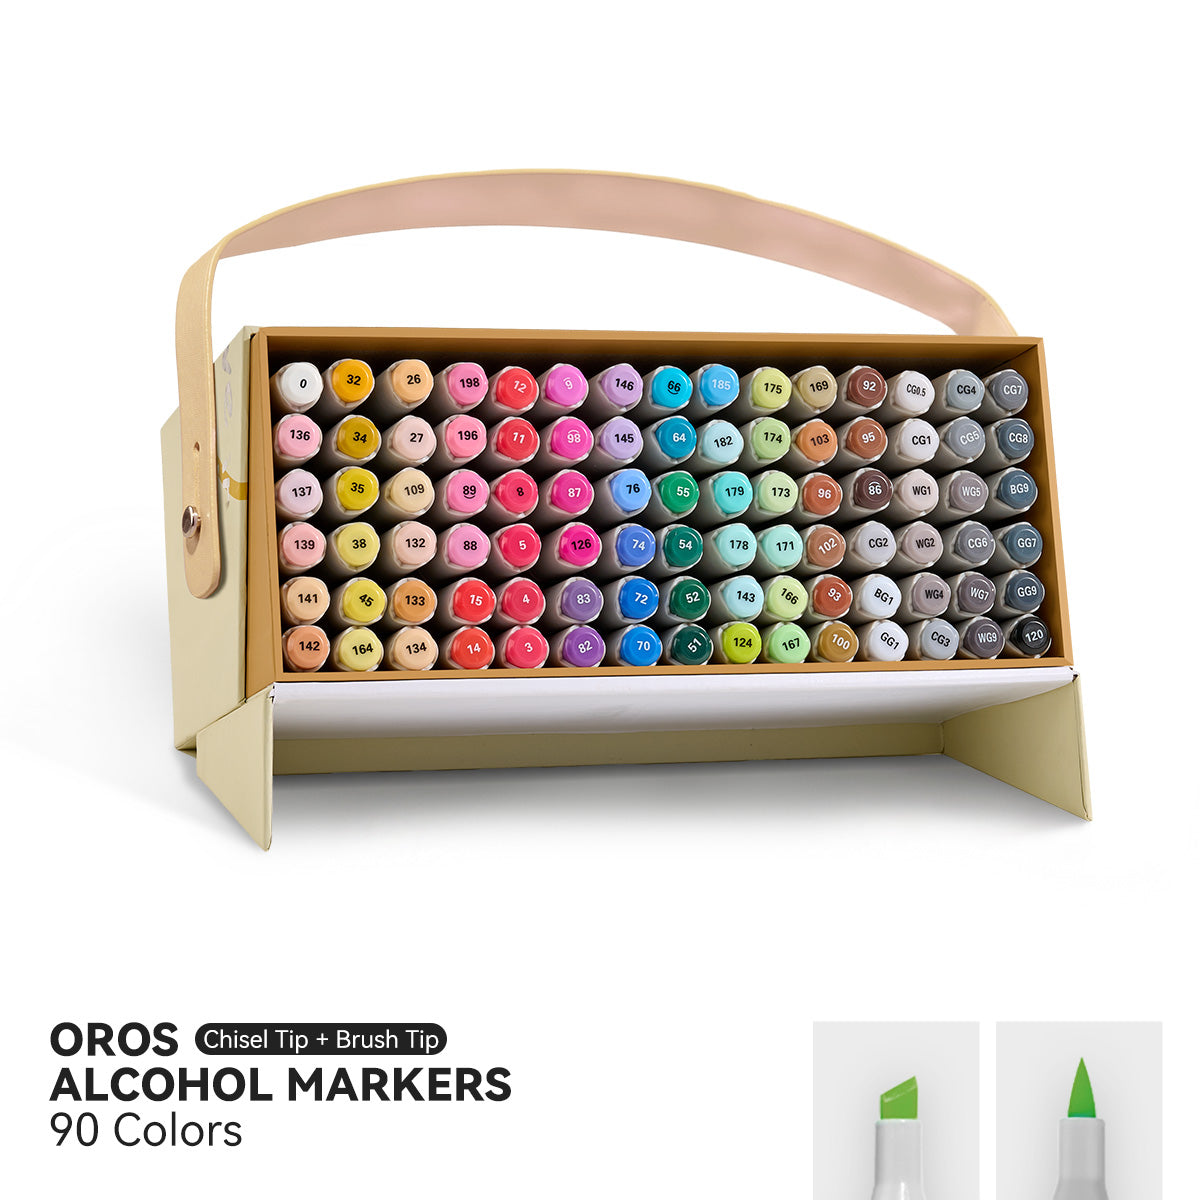 Arrtx OROS 90 Colors Alcohol Markers Paint Pen Set